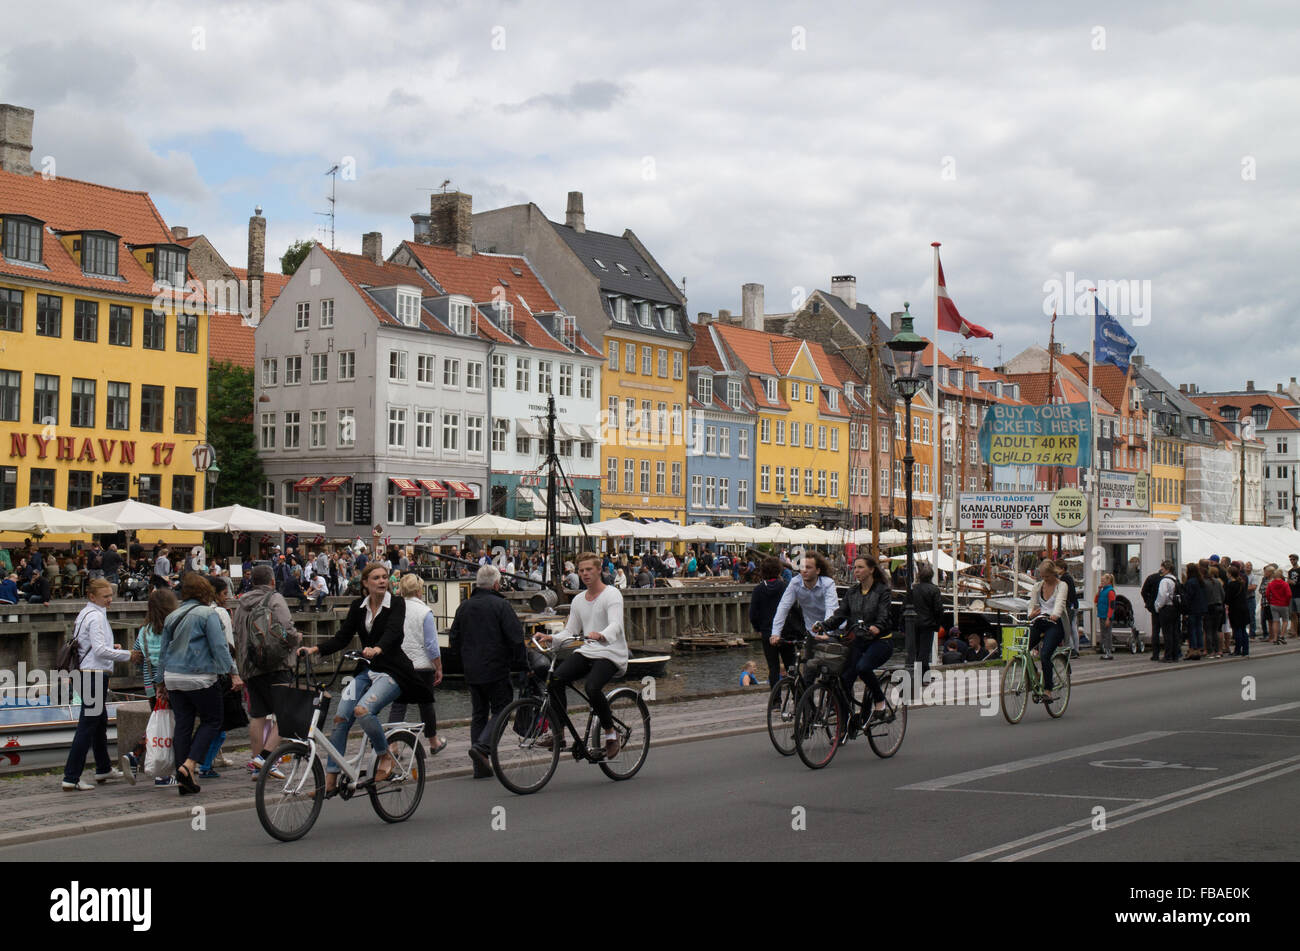 Les cyclistes passant les maisons colorées contenant des bars et restaurants de la canal au nouveau port de Nyhavn Copenhague Danemark Banque D'Images